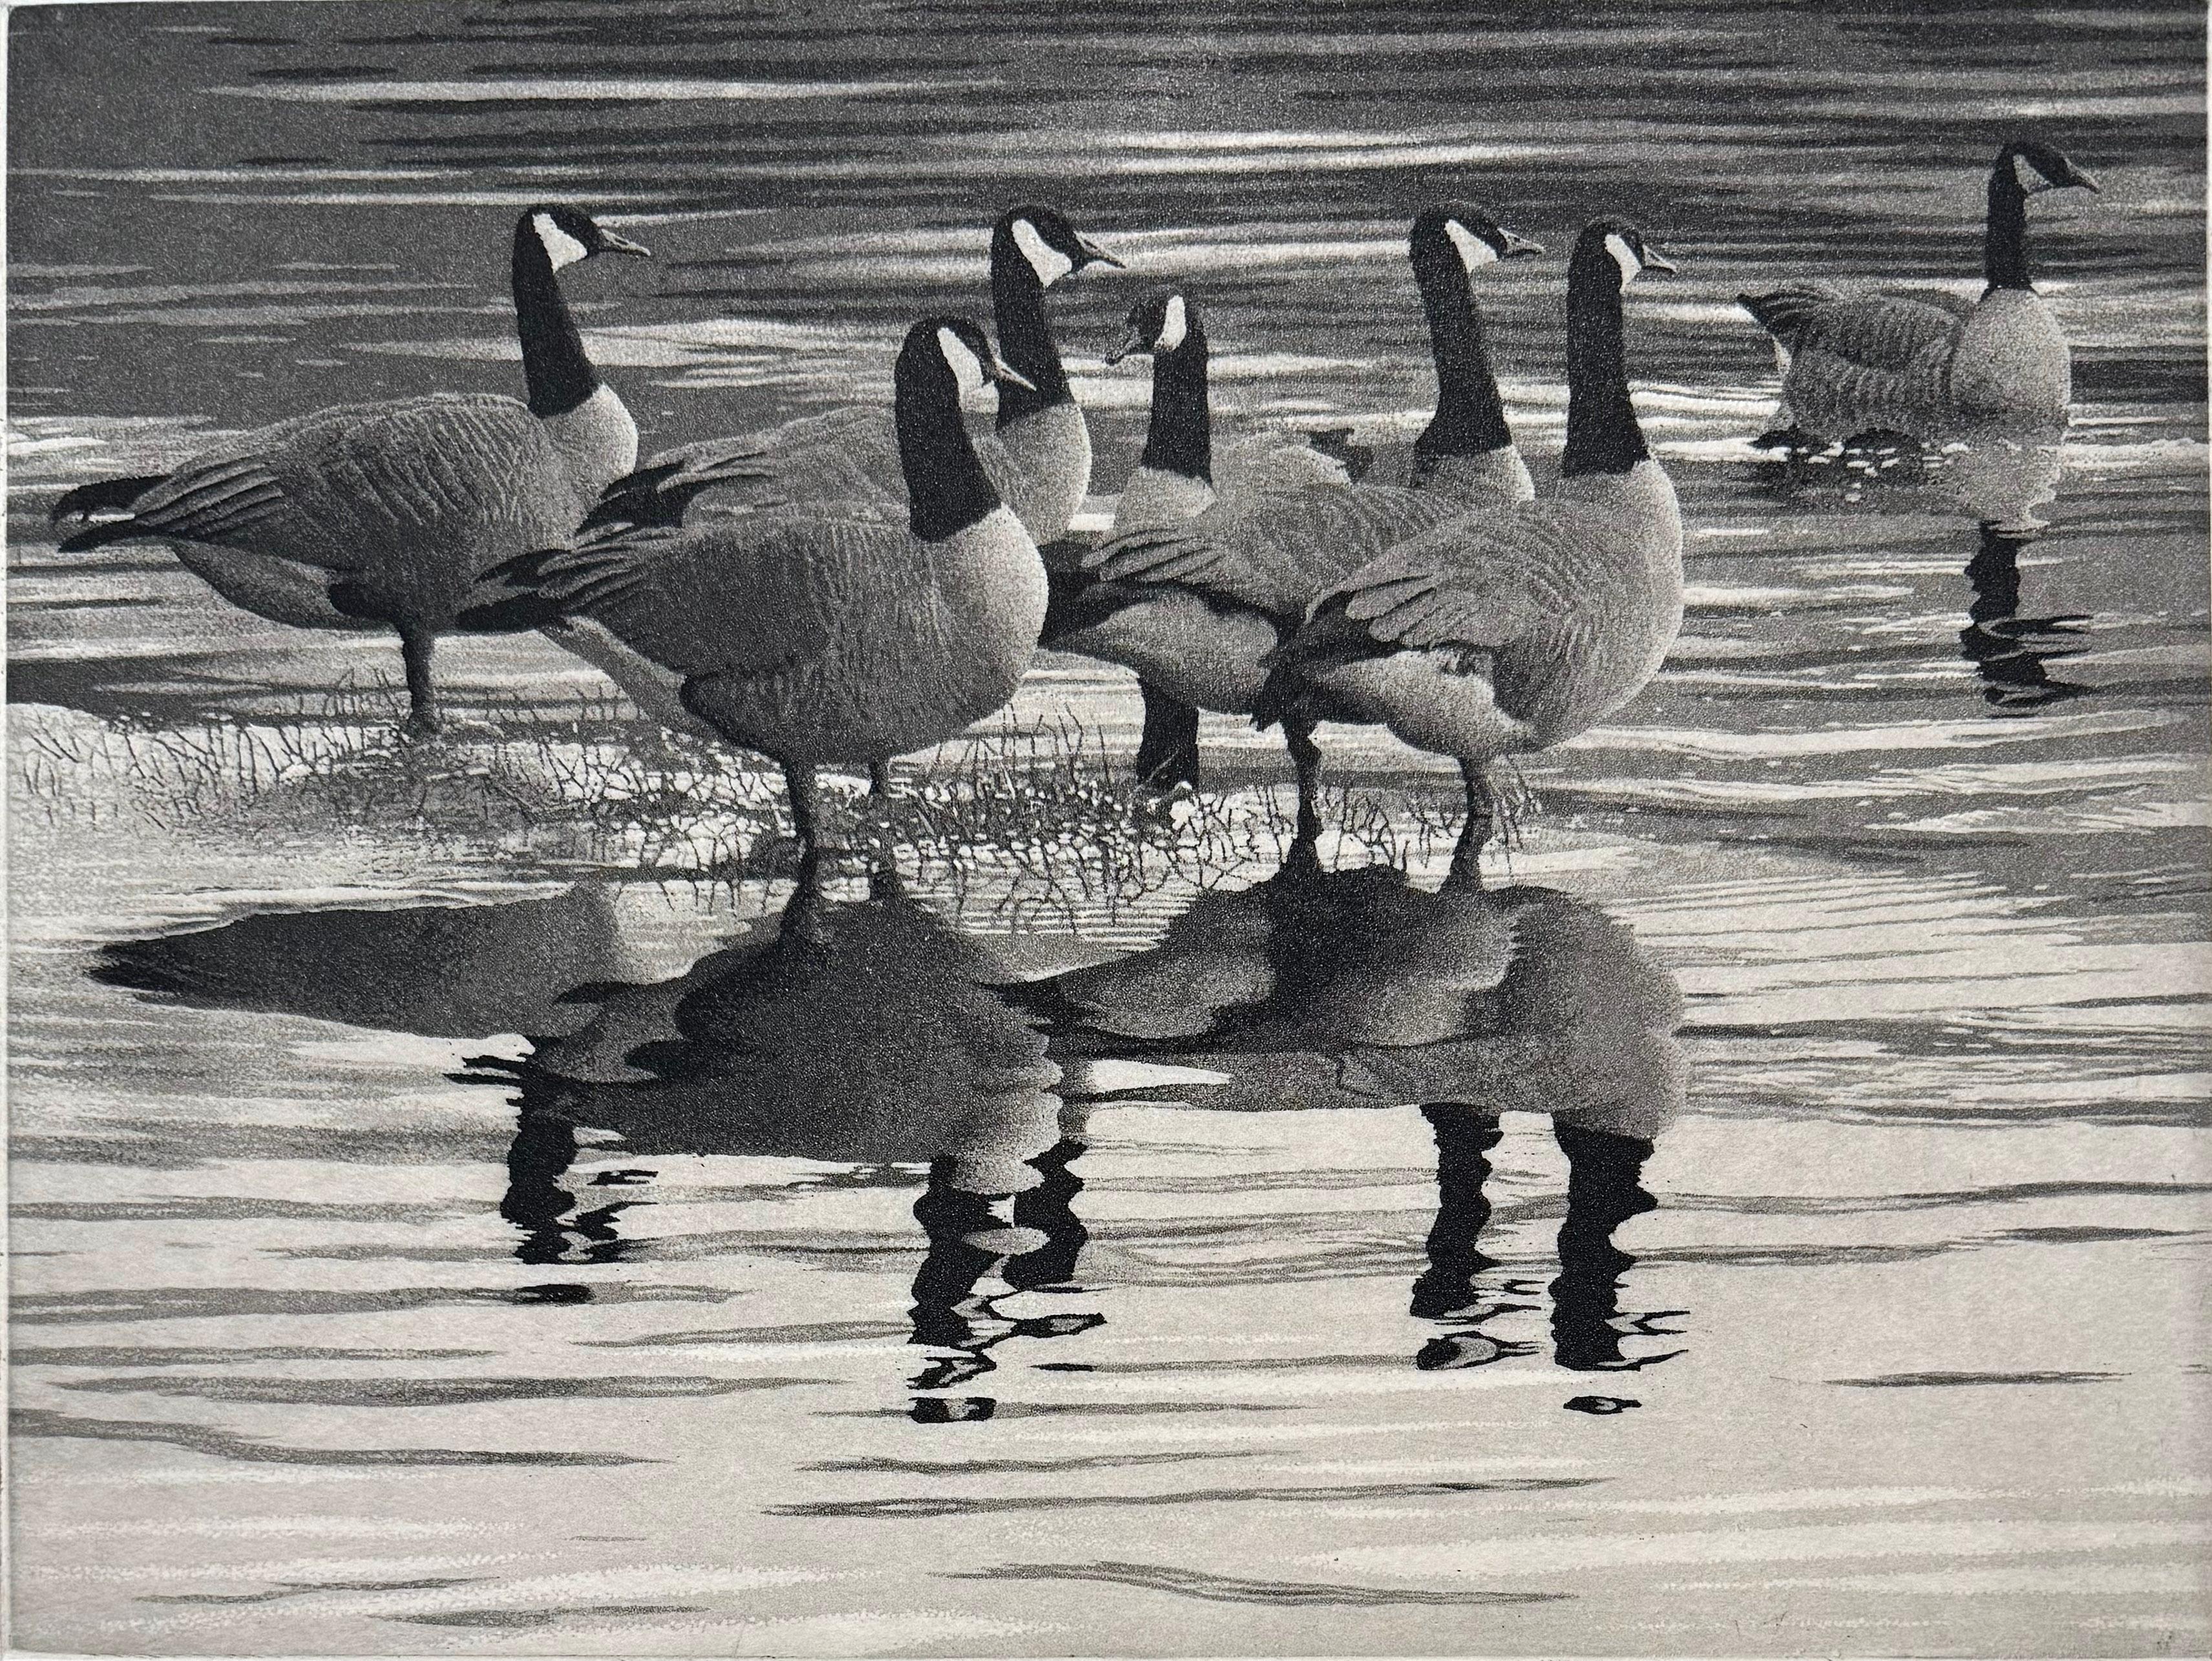 Médium : eau-forte et aquatinte
Edition de 250
Année : 2014
Taille de l'image : 9 x 12 pouces
Signé, titré et numéroté par l'artiste.

Inspiré par une scène de sept oies canadiennes dans le lac Padden, Bellingham, WA. C'est un exemple parfait du